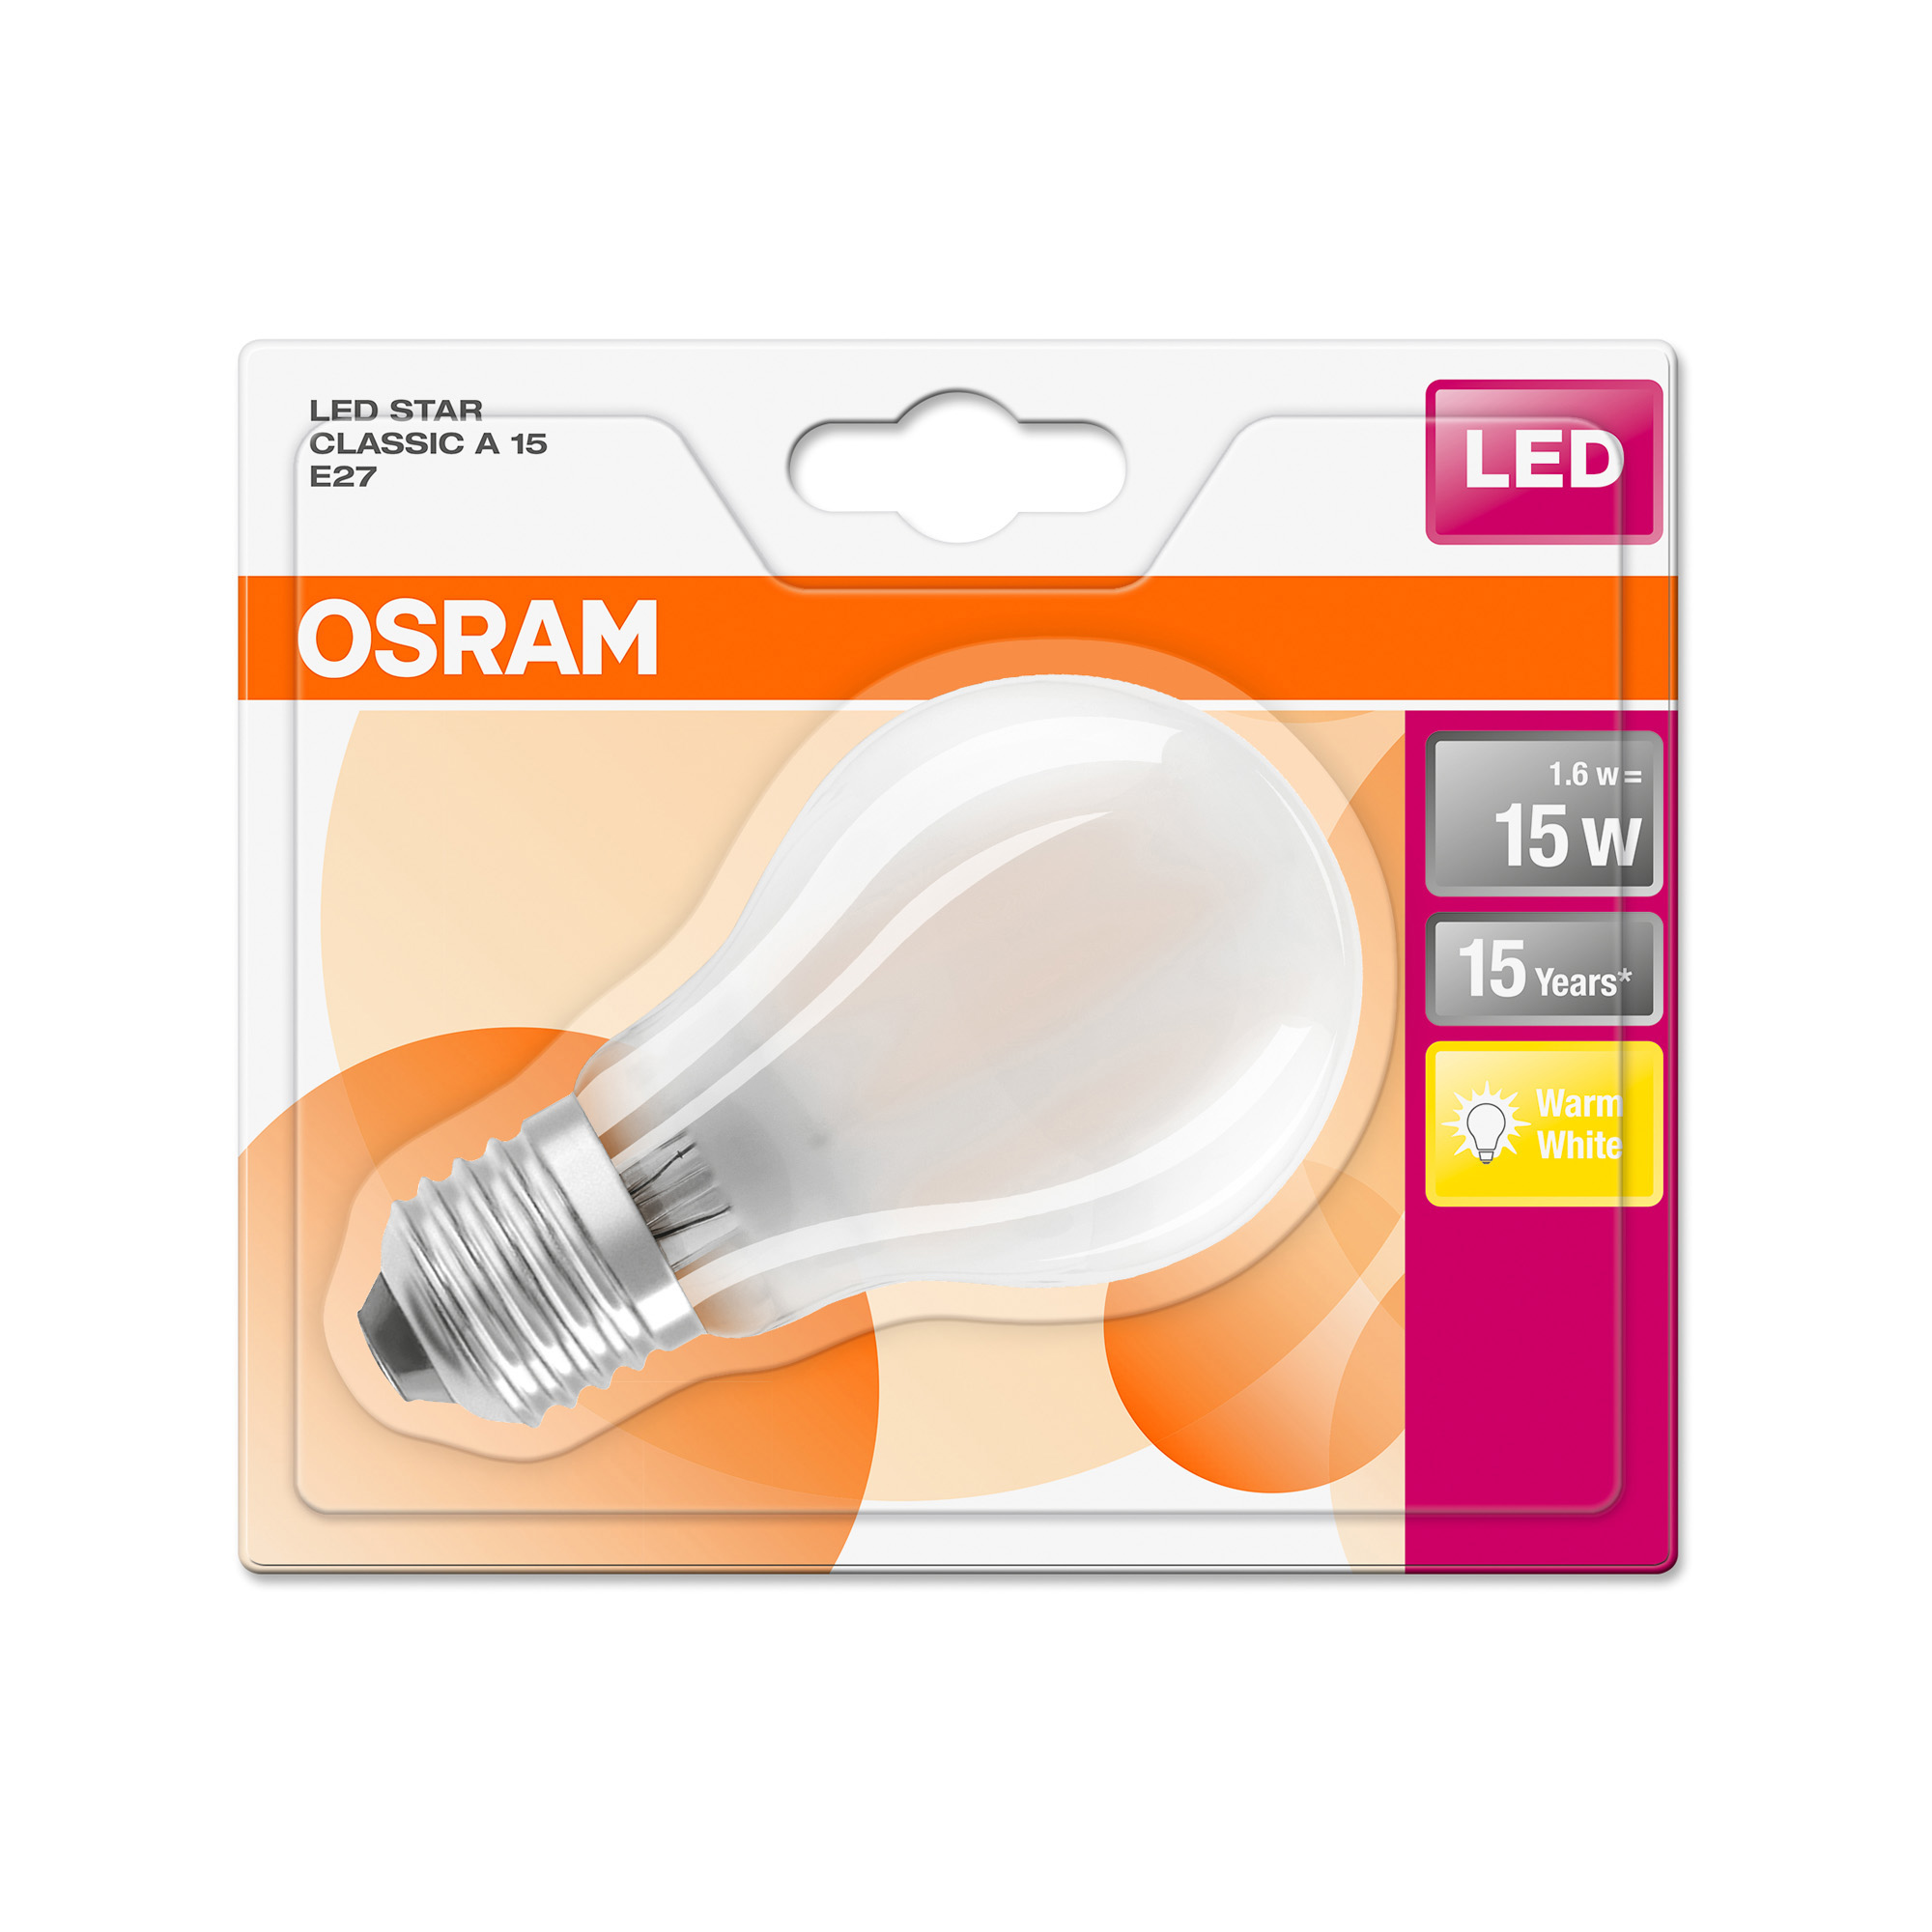 Osram LED STAR RETROFIT diffuse CLA 15 1.6W 827 E27 non-dim 2700K 136lm